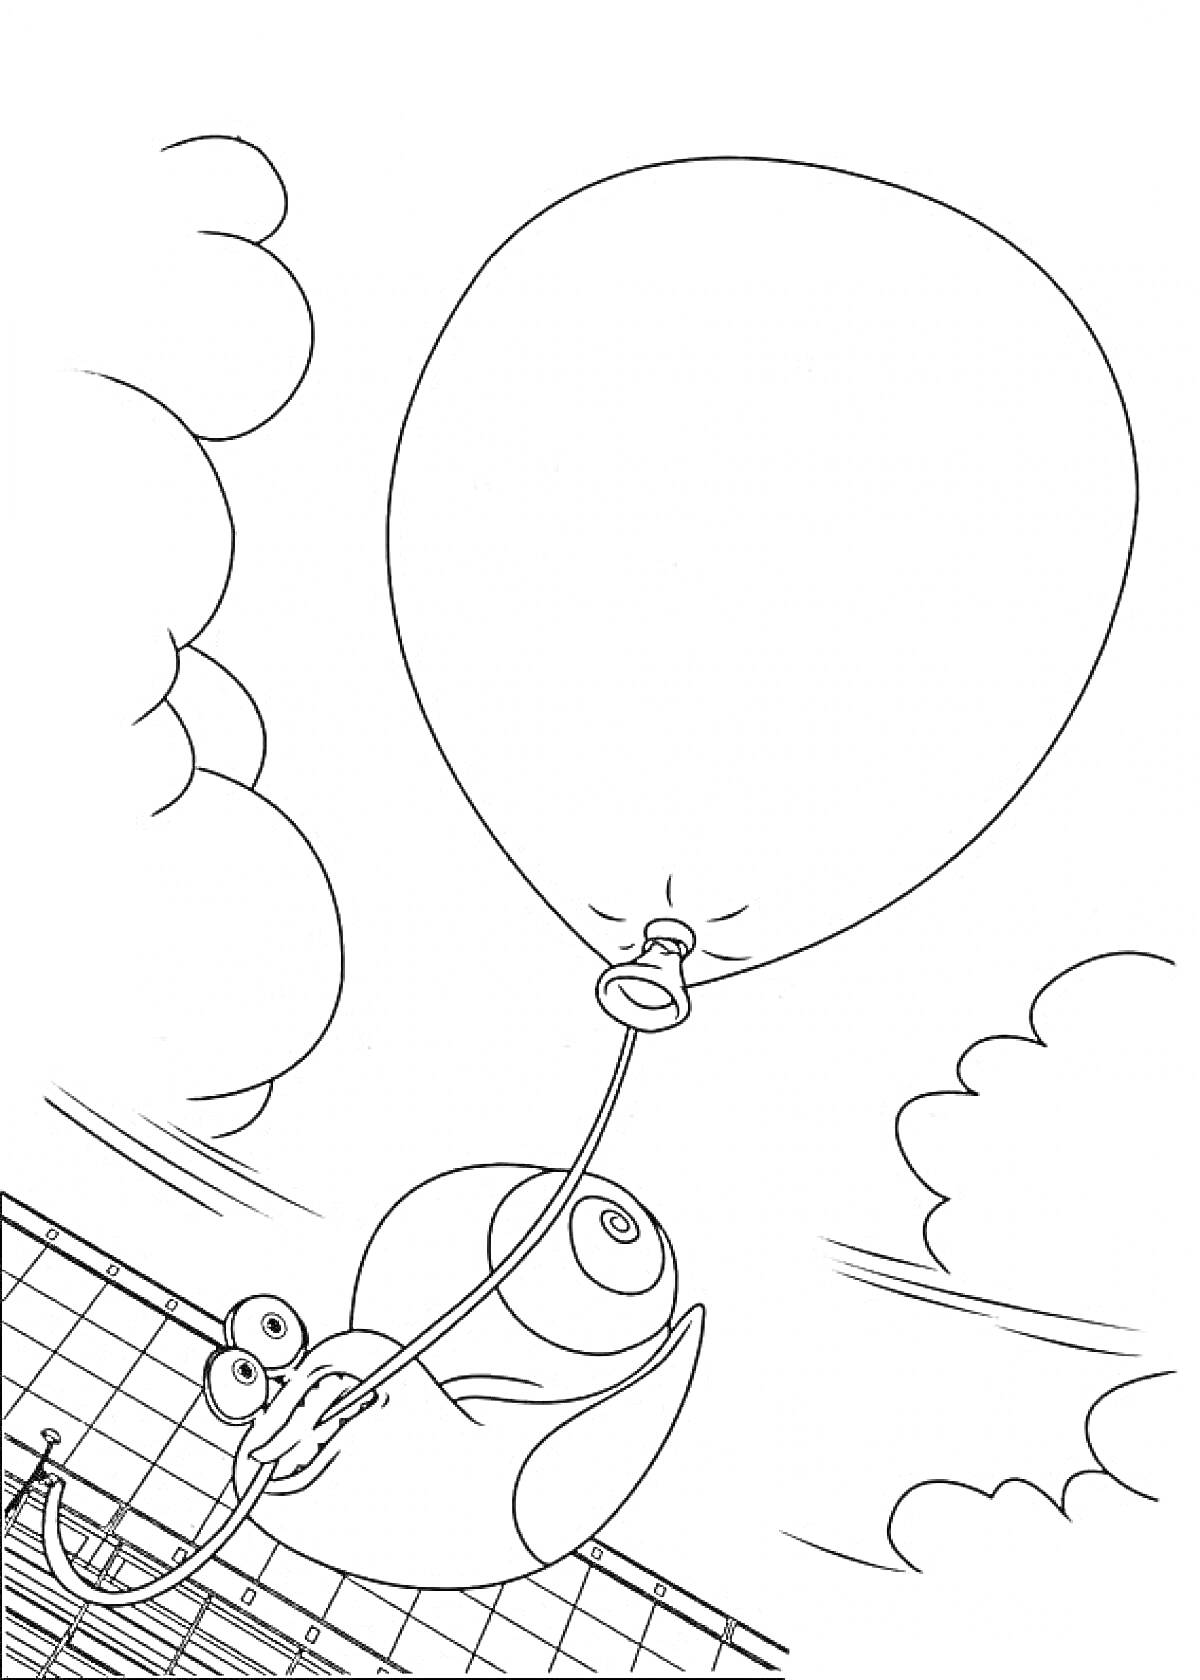 Улитка держит воздушный шарик на фоне облаков и металлической решетки